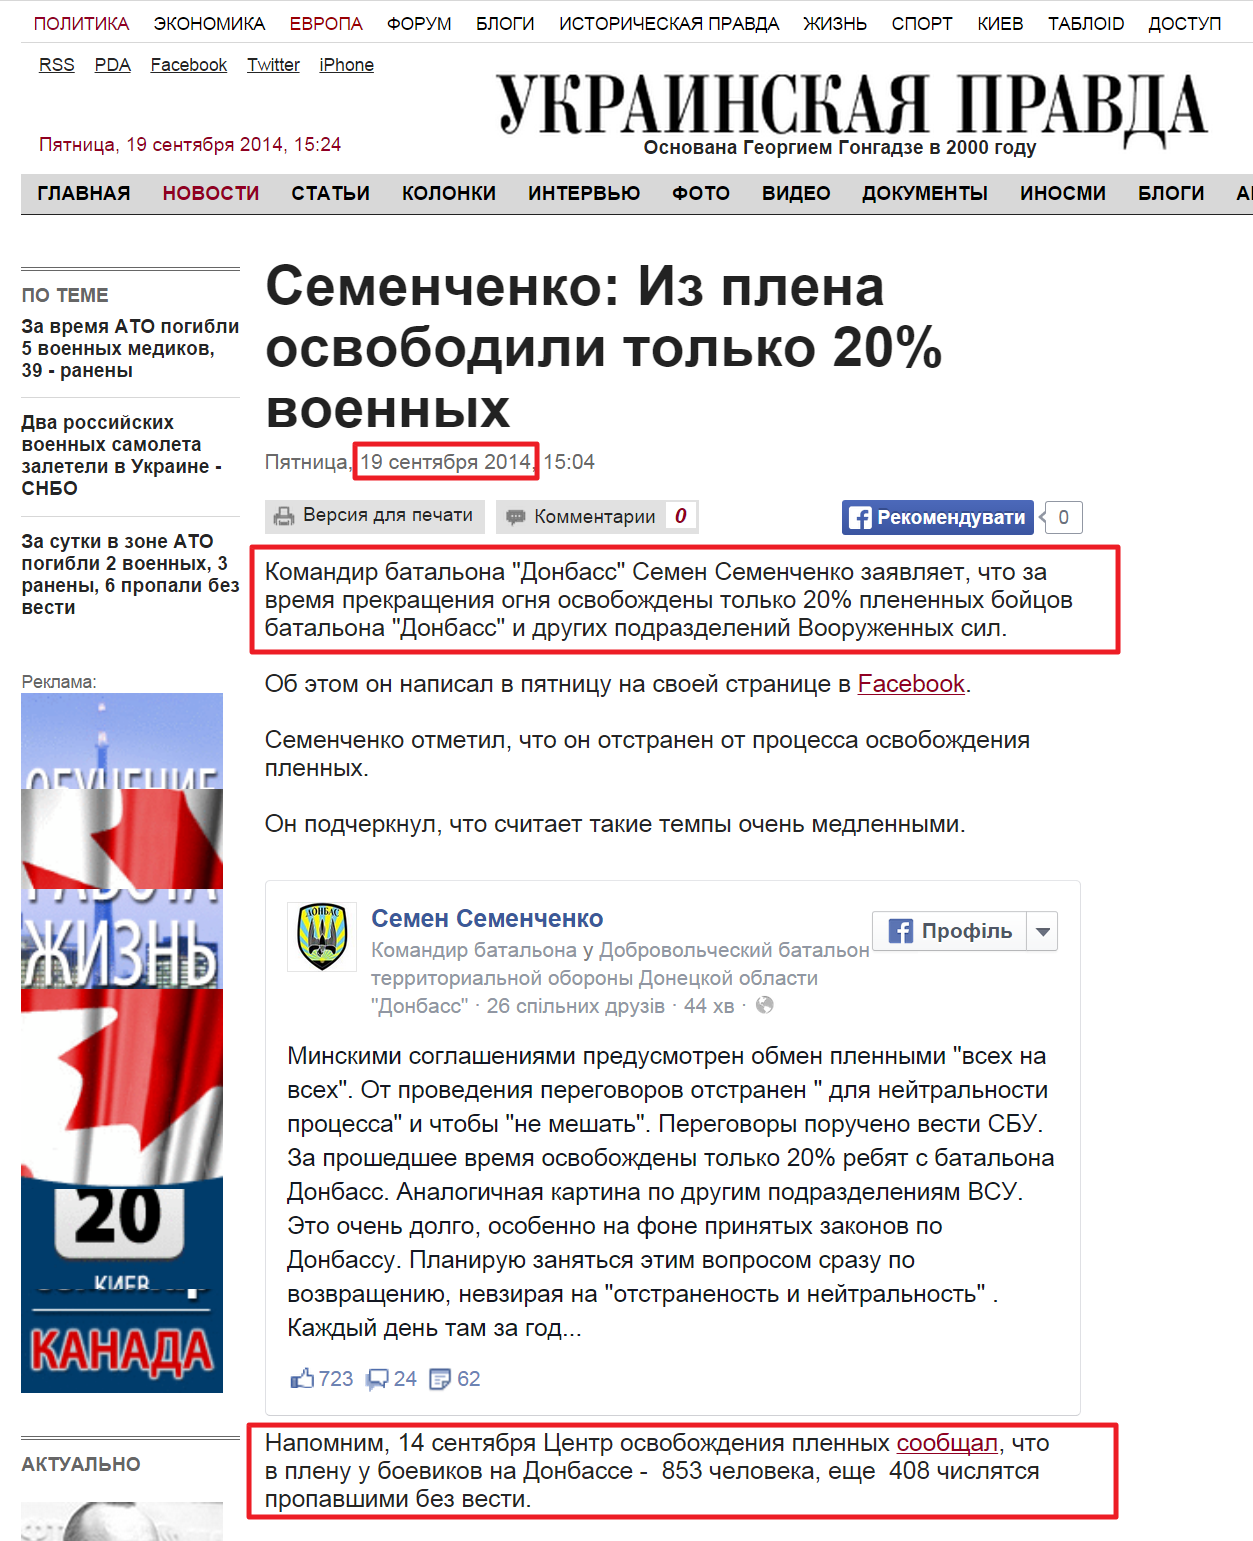 http://www.pravda.com.ua/rus/news/2014/09/19/7038320/